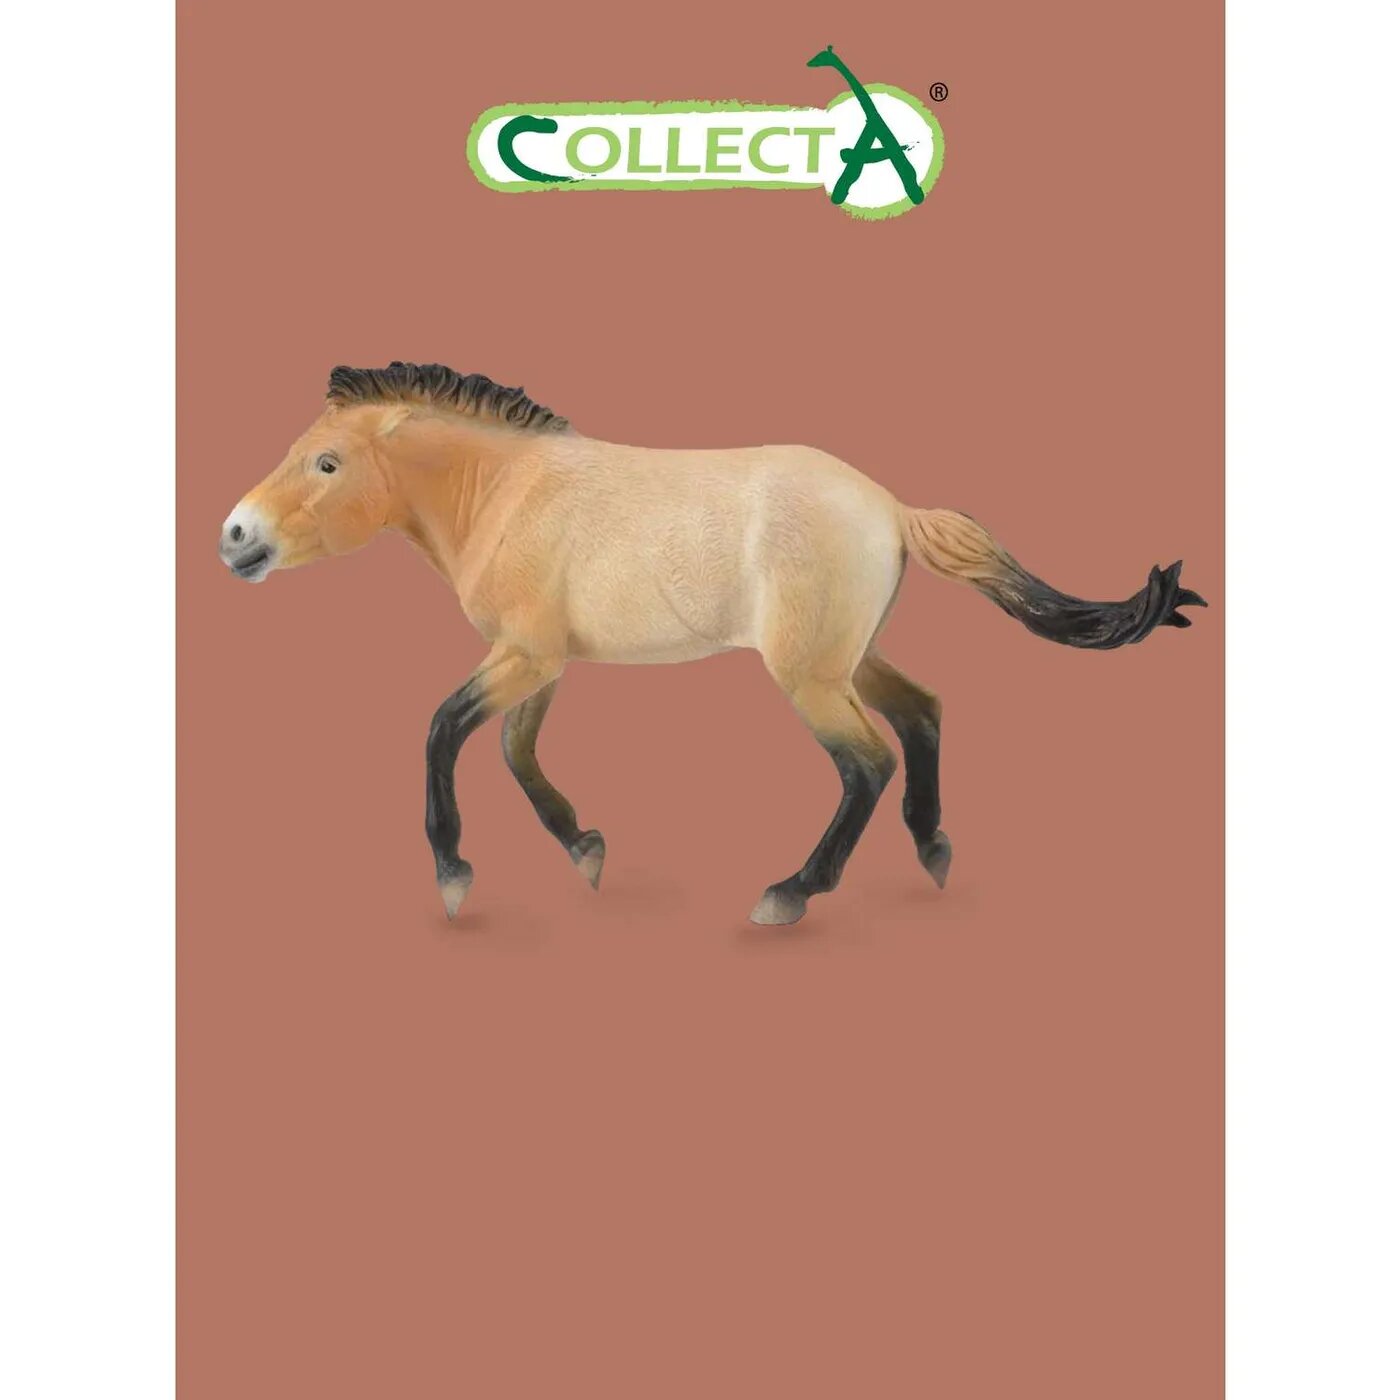 Фигурка животного Collecta лошадь Жеребец Пржевальского